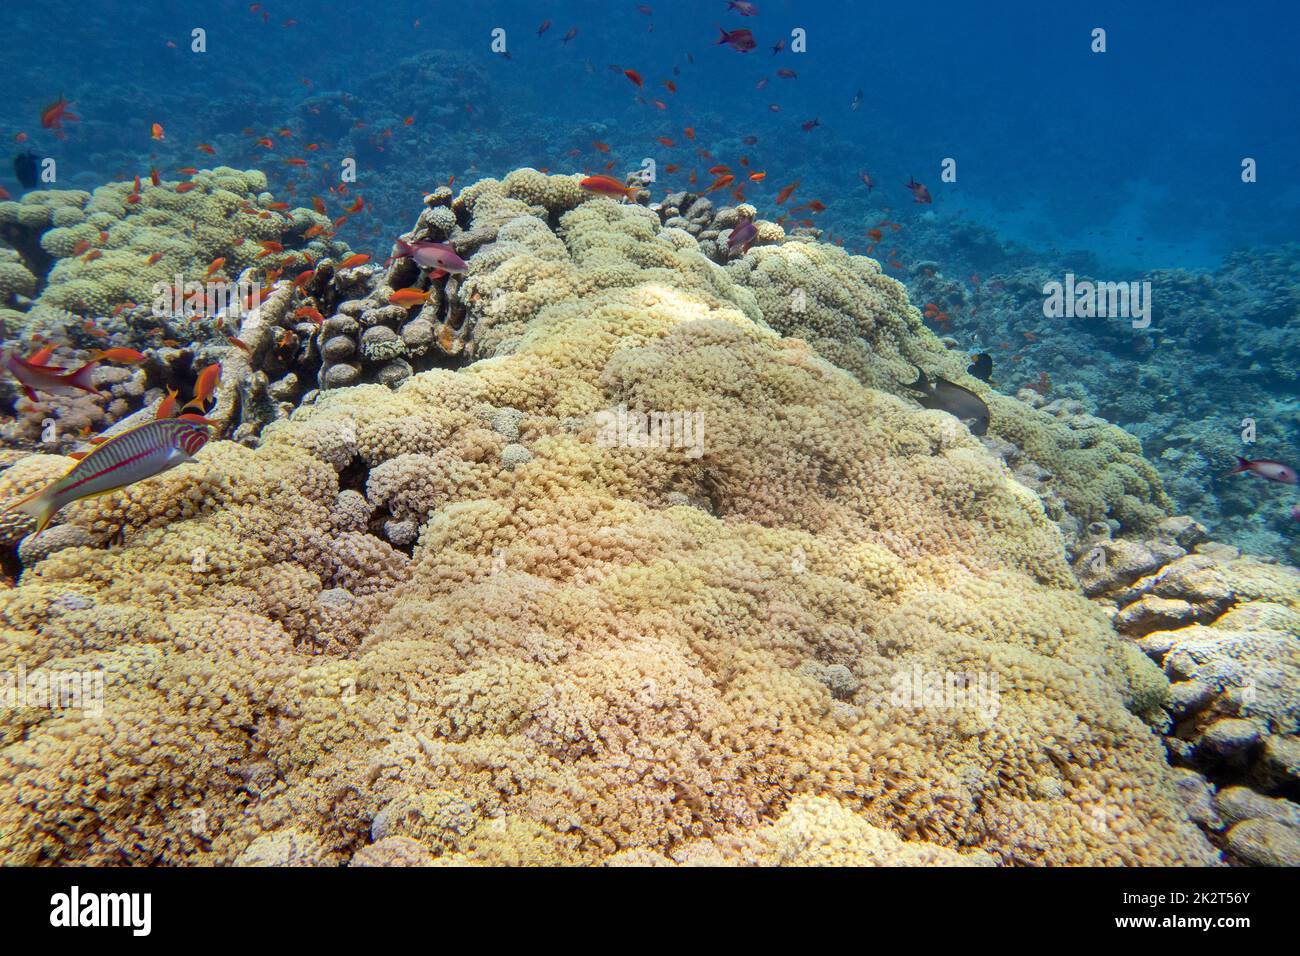 Farbenprächtiges, malerisches Korallenriff am Boden des tropischen Meeres, weiche, korallengelbe Tubipora Musica- und Anthias-Fische, Unterwasserlandschaft Stockfoto